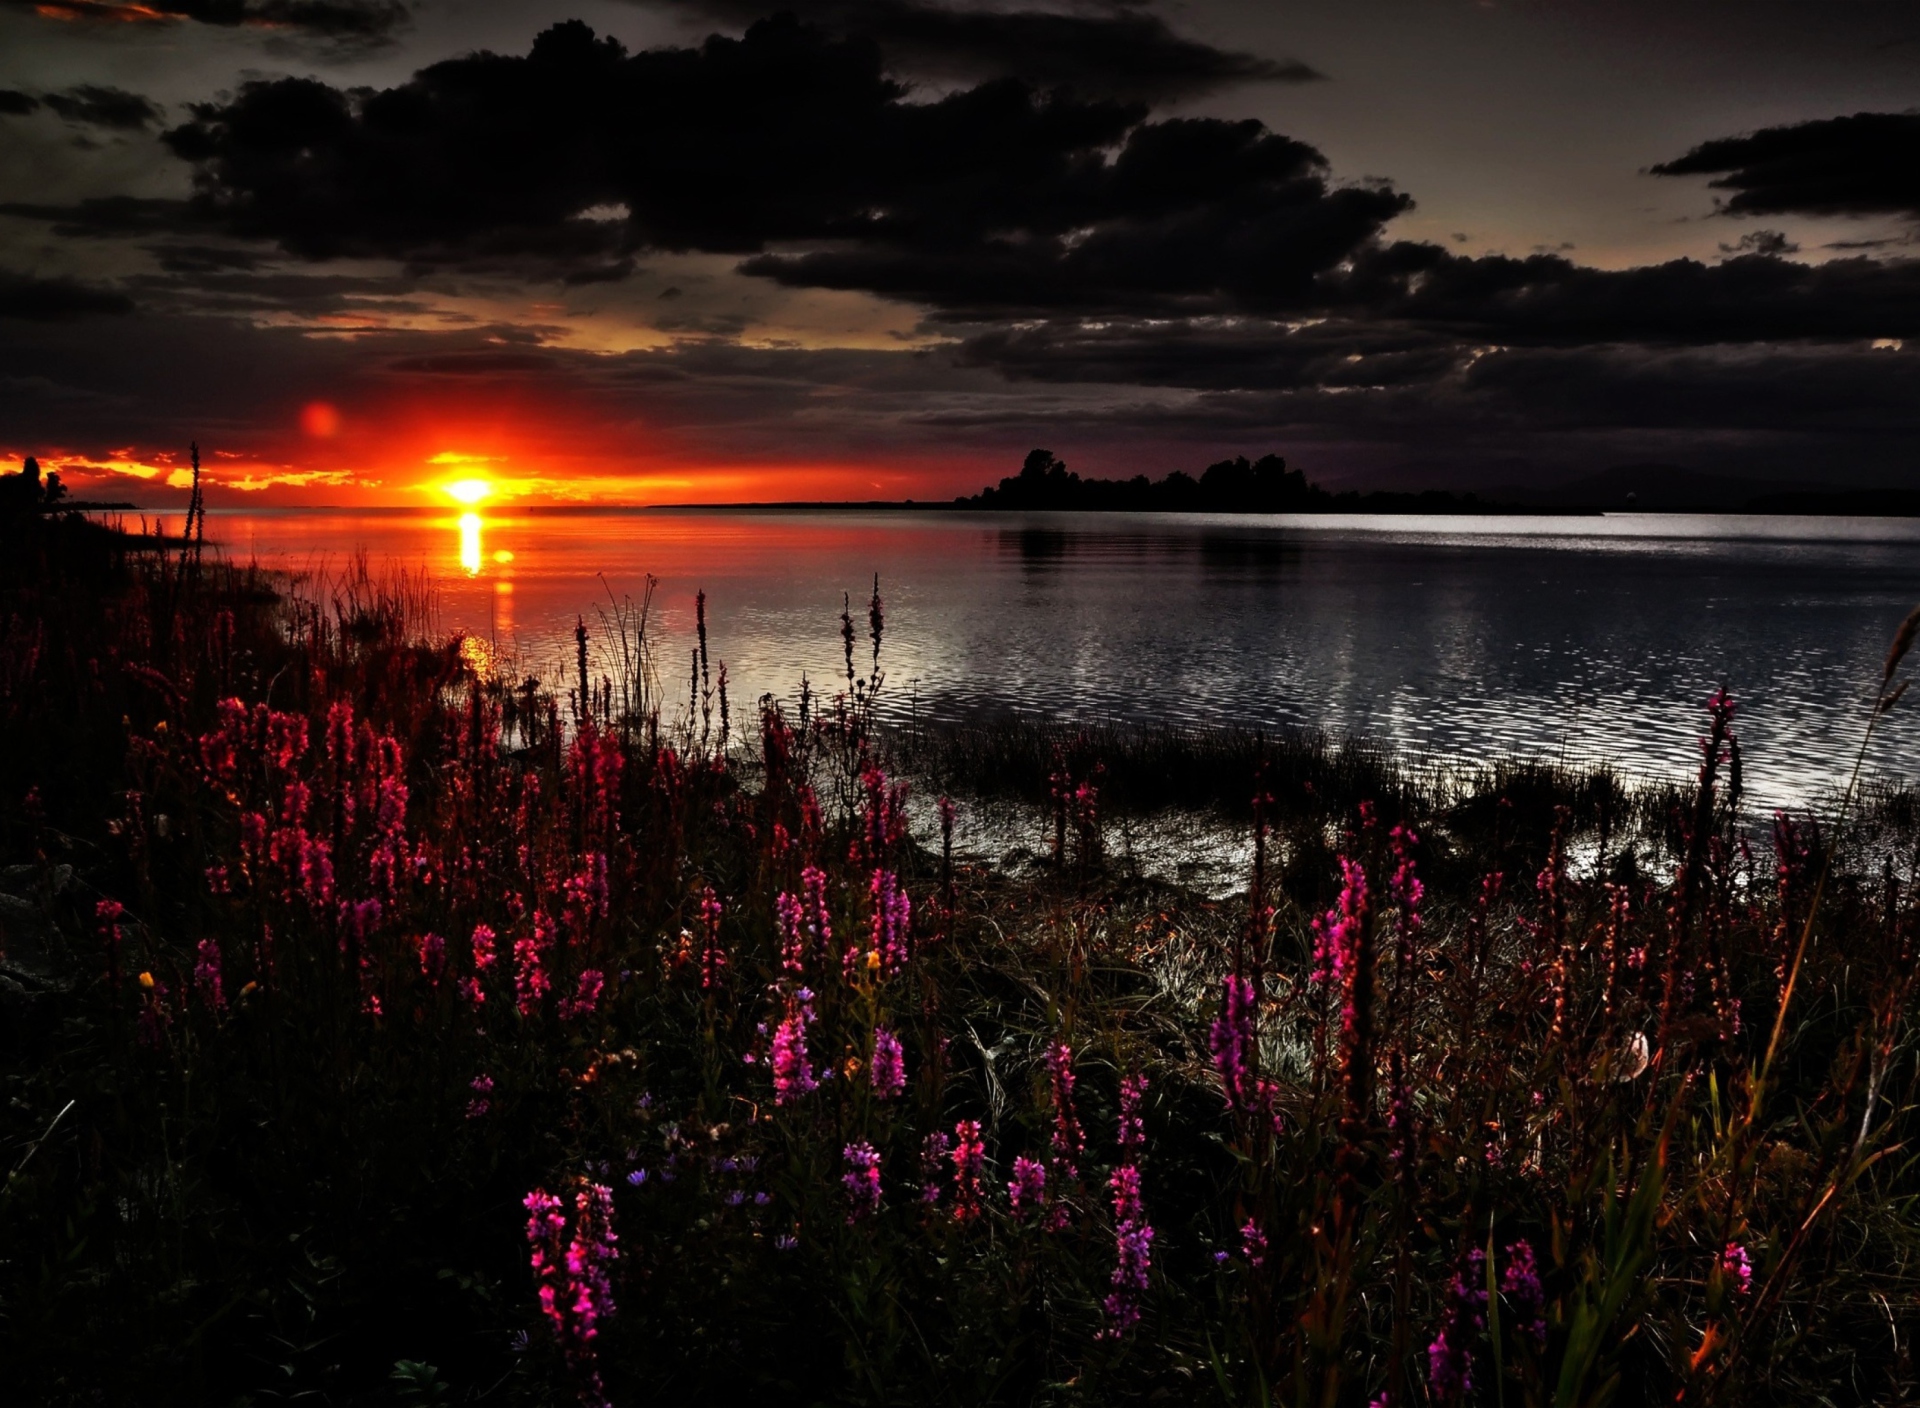 Sfondi Flowers And Lake At Sunset 1920x1408